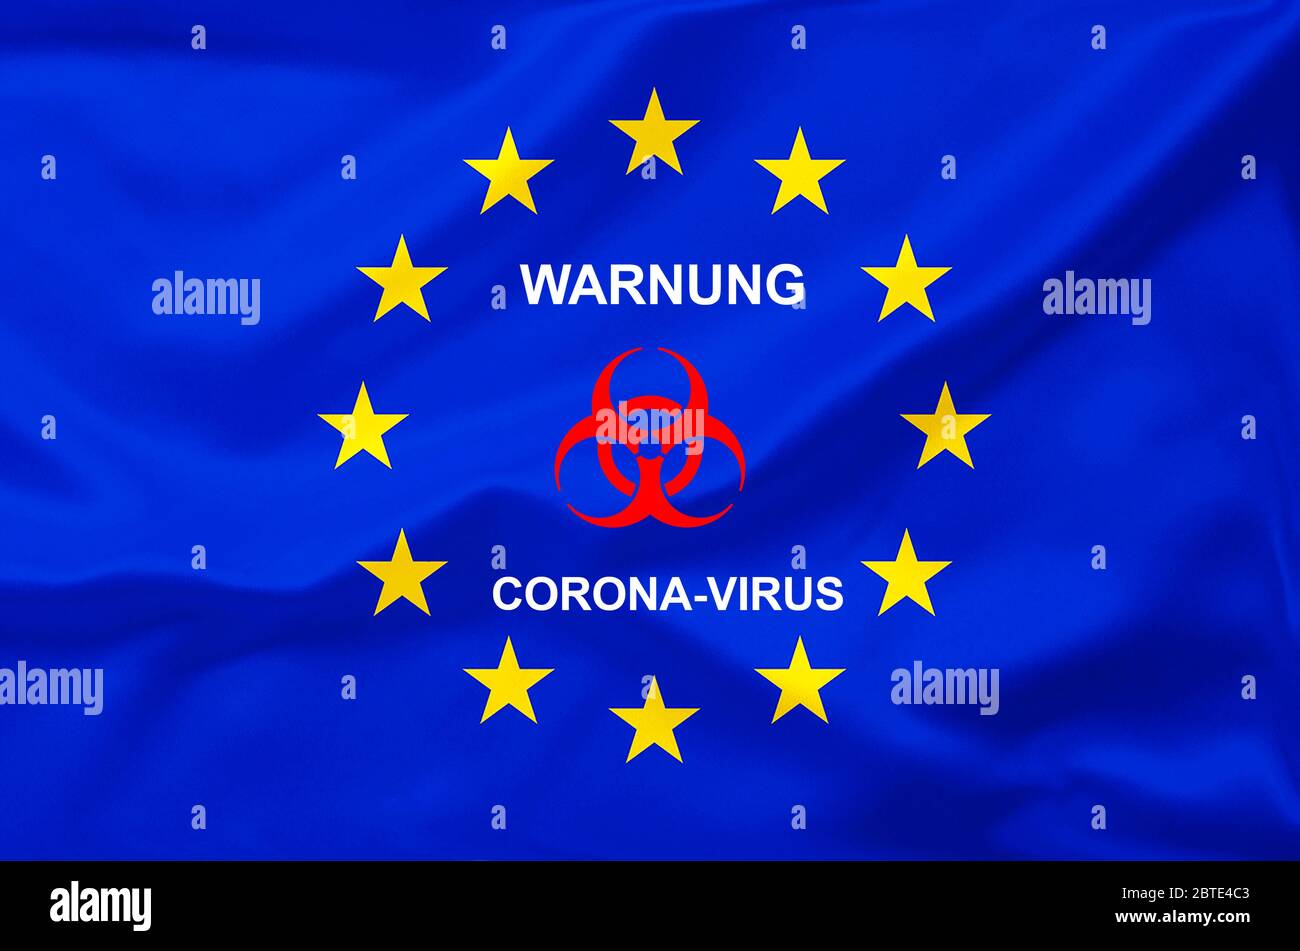 Drapeau de l'UE avec avertissement d'empreinte, Biohazard, coronavirus, Europe Banque D'Images